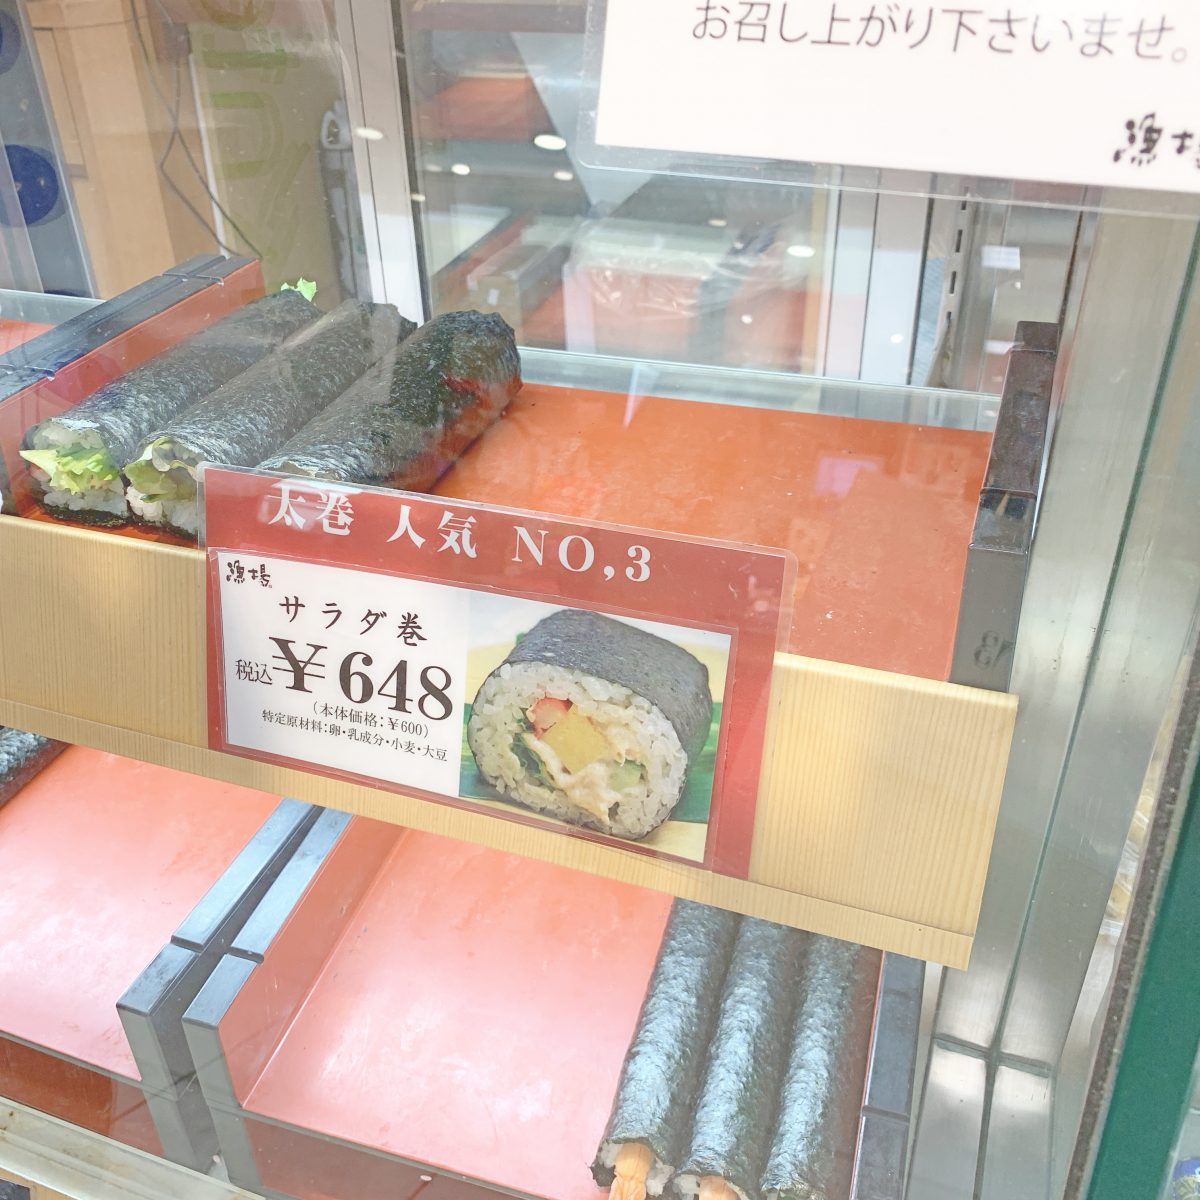 天王寺でひとくちお稲荷さんが買える店『寿司処 漁場』@あべのハルカス近鉄百貨店